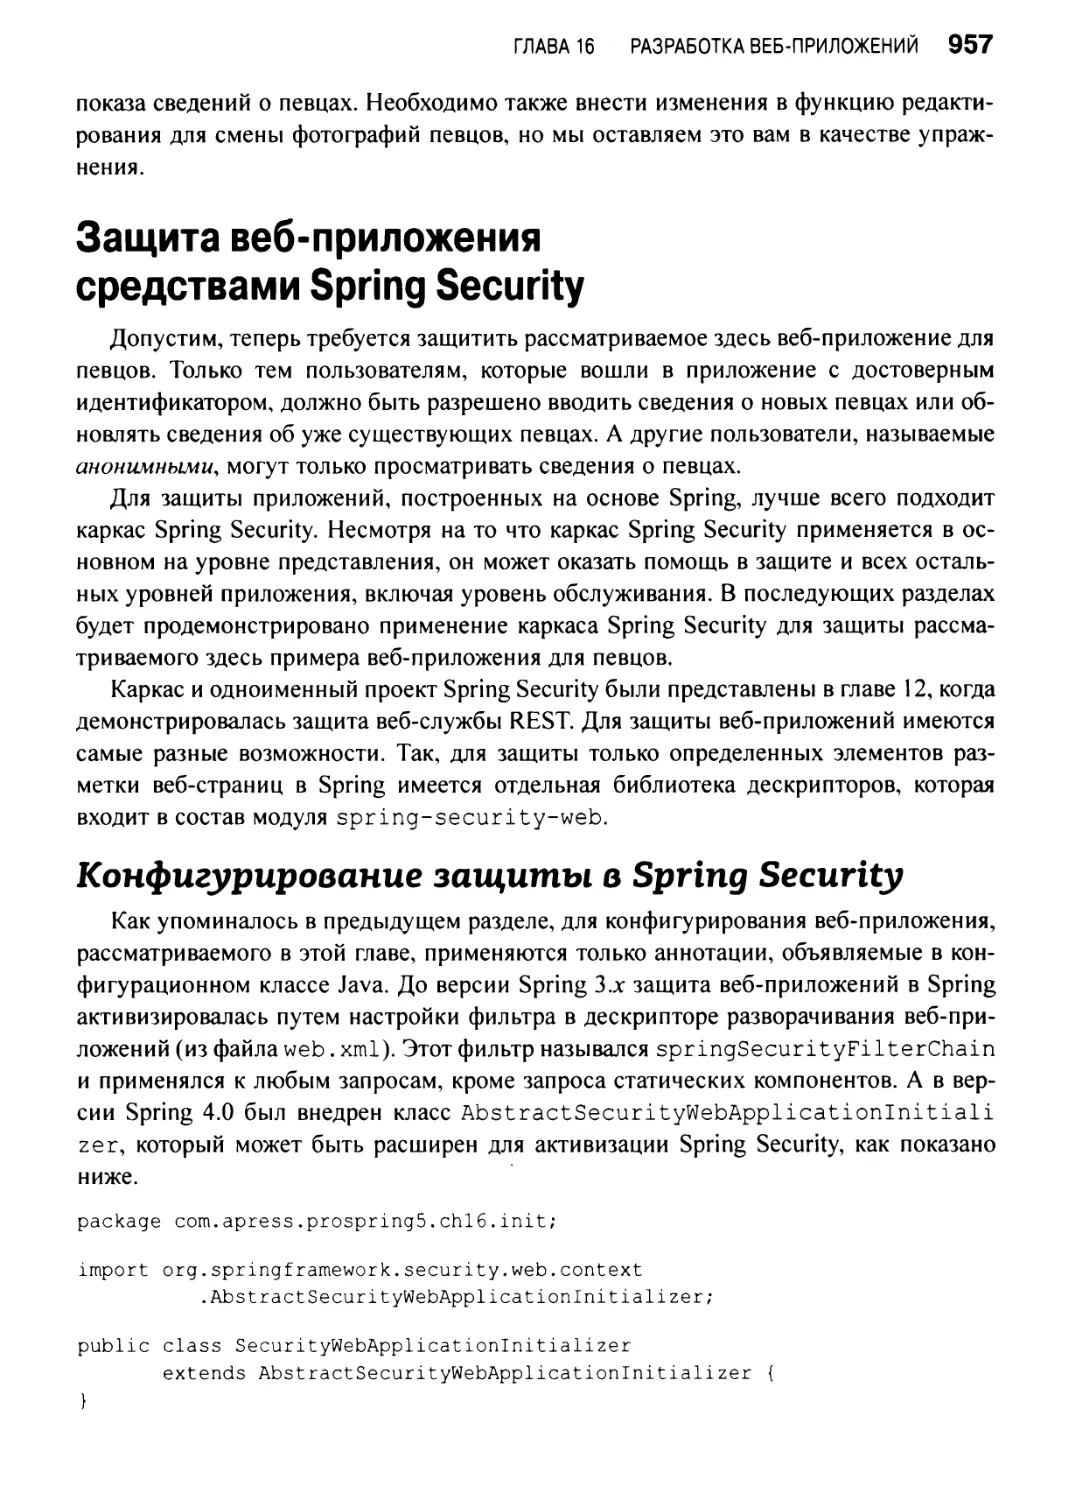 Защита веб-приложения средствами Spring Security